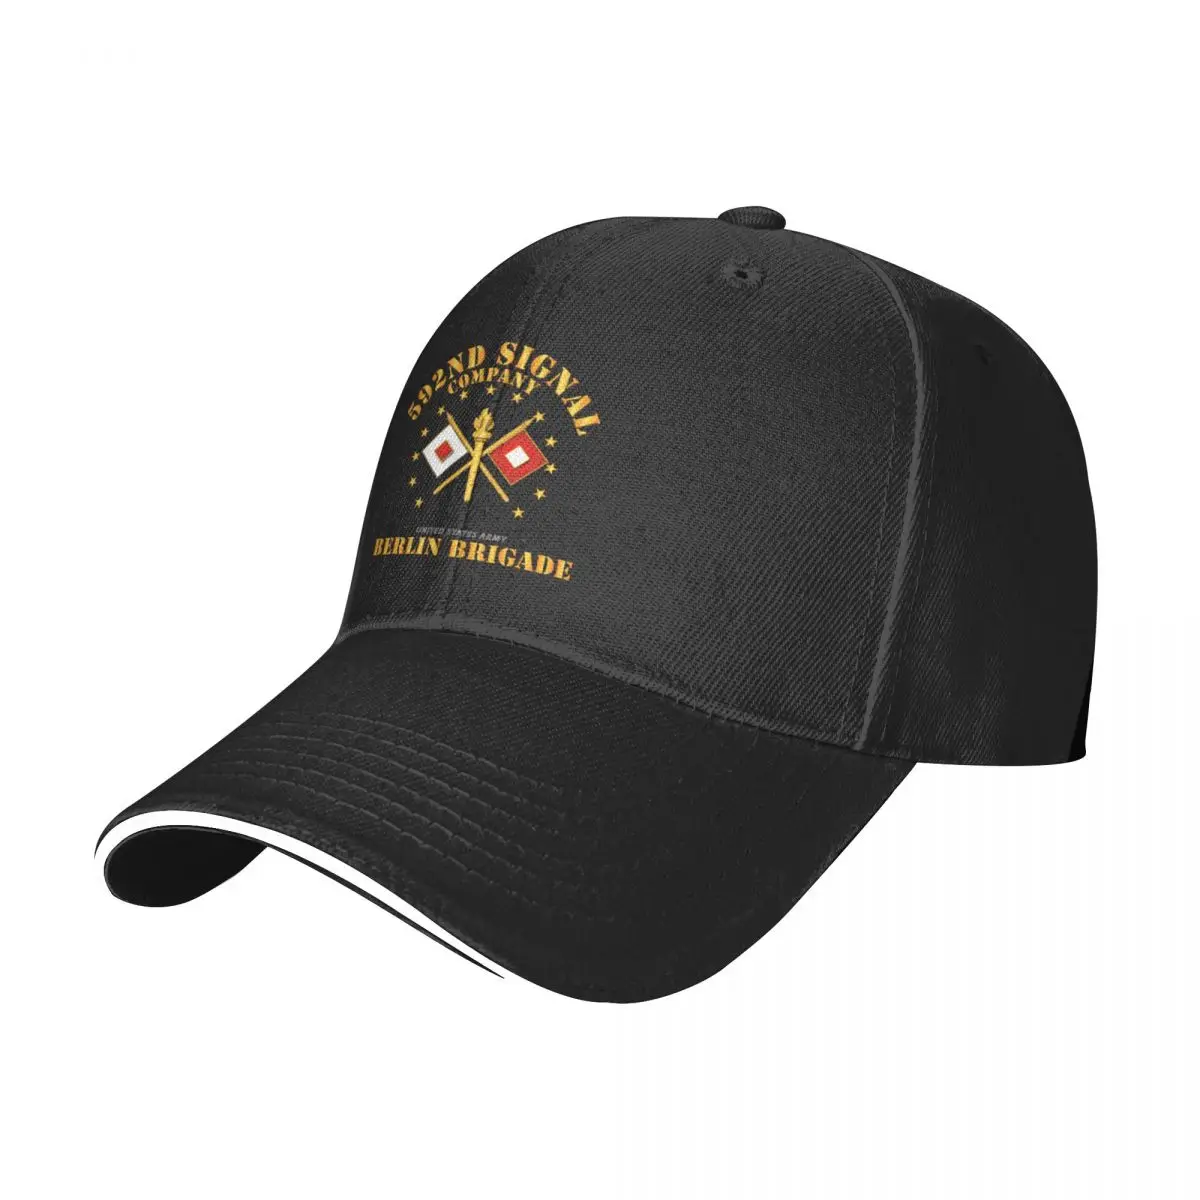 

Инструмент группы армейская-592d сигнальная компания-Берлинская бригадная кепка бейсболка новая в шляпе Мужская кепка Роскошная Брендовая женская